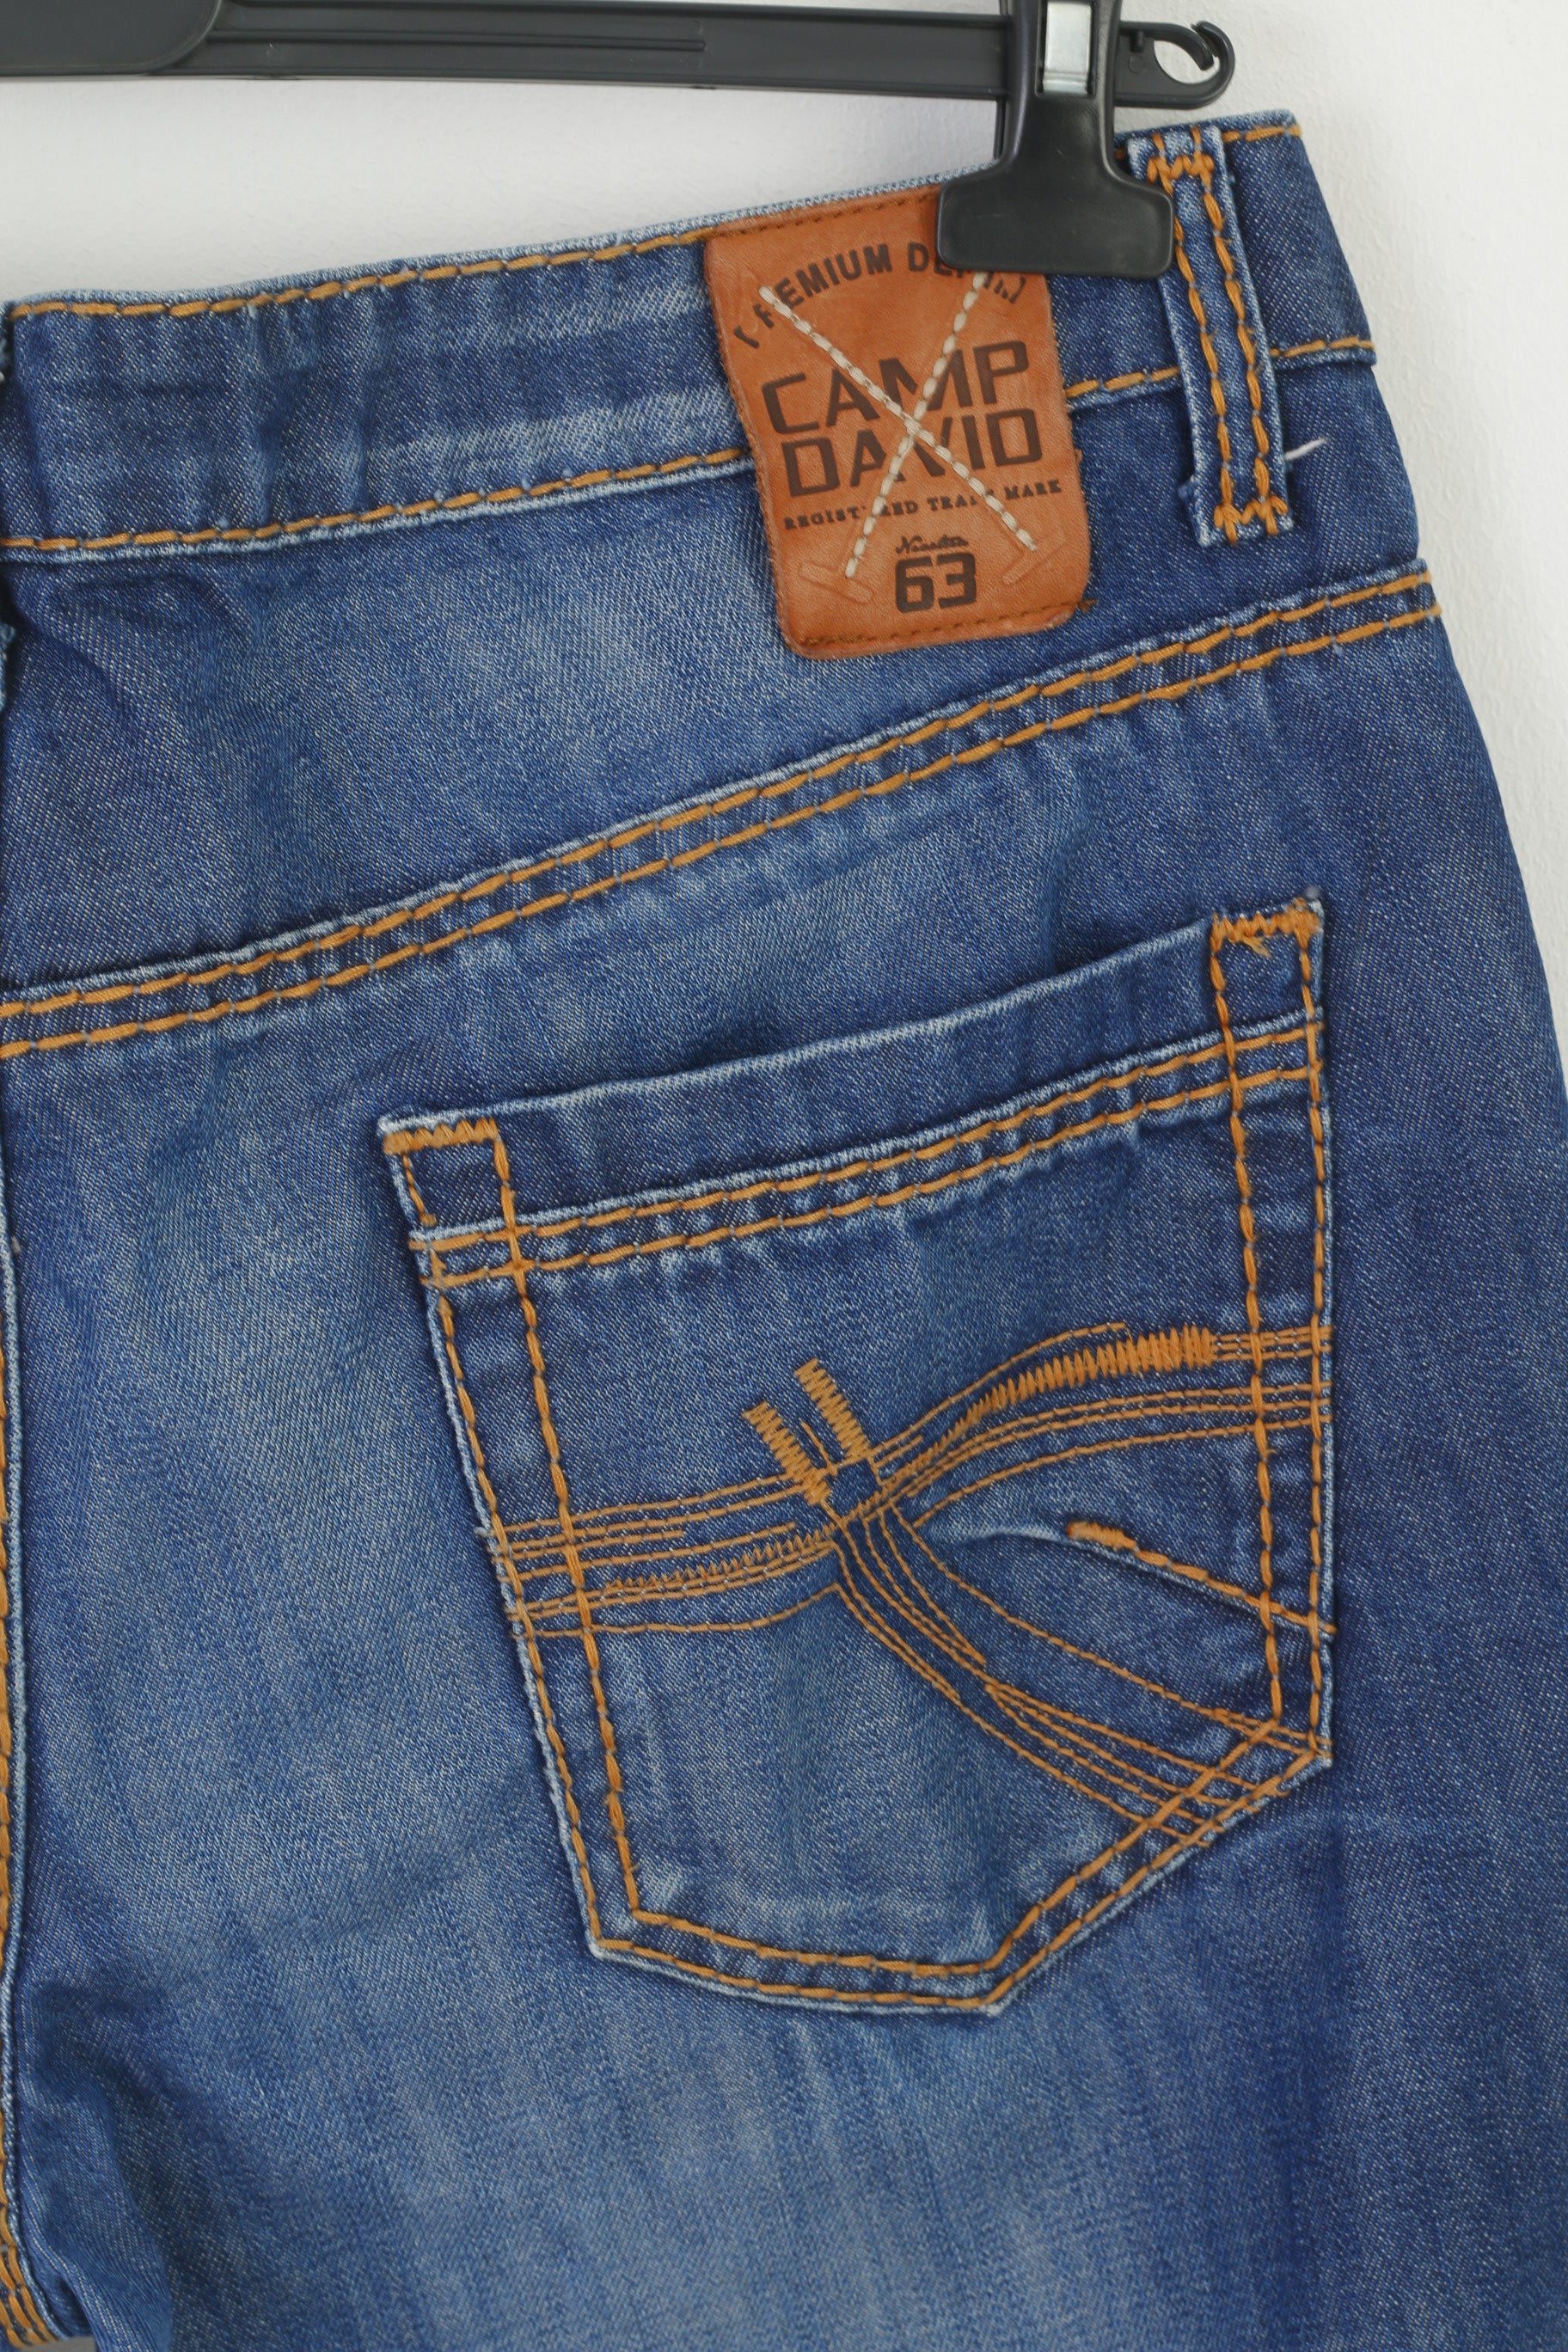 Camp David Men 36 Jeans Navy Trousers – Clothes Leg Denim Long Retrospect P Cotton Straight